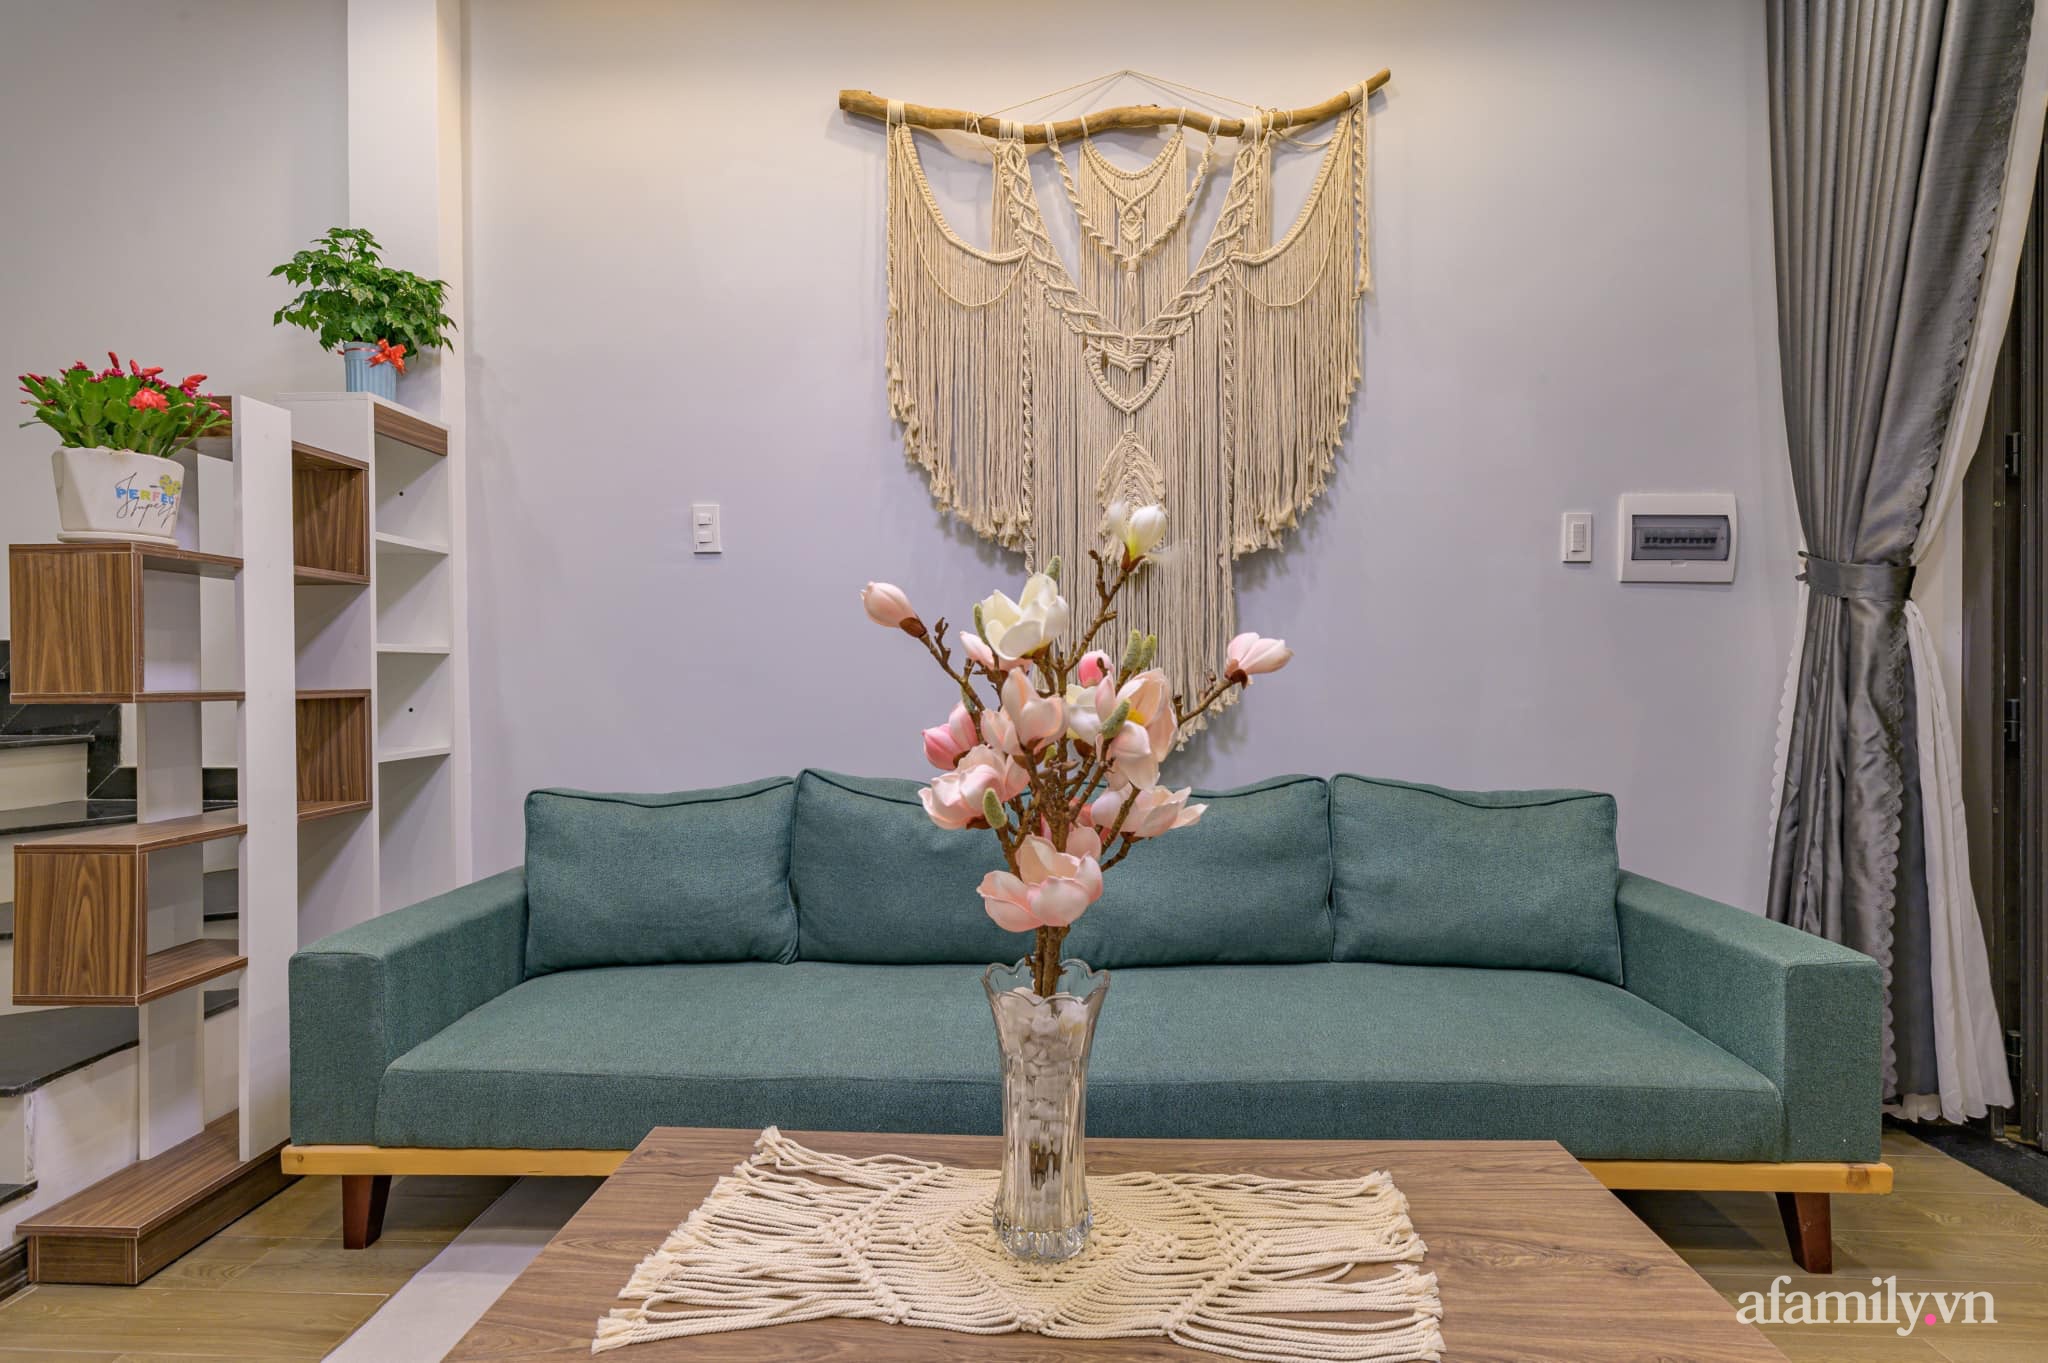  Không gian phòng khách được thiết kế đơn giản, tinh tế với điểm nhấn từ sofa. Nội thất như kệ tivi, kệ trang trí, bàn trà đều được sử dụng màu gỗ đơn giản, thân thiện.